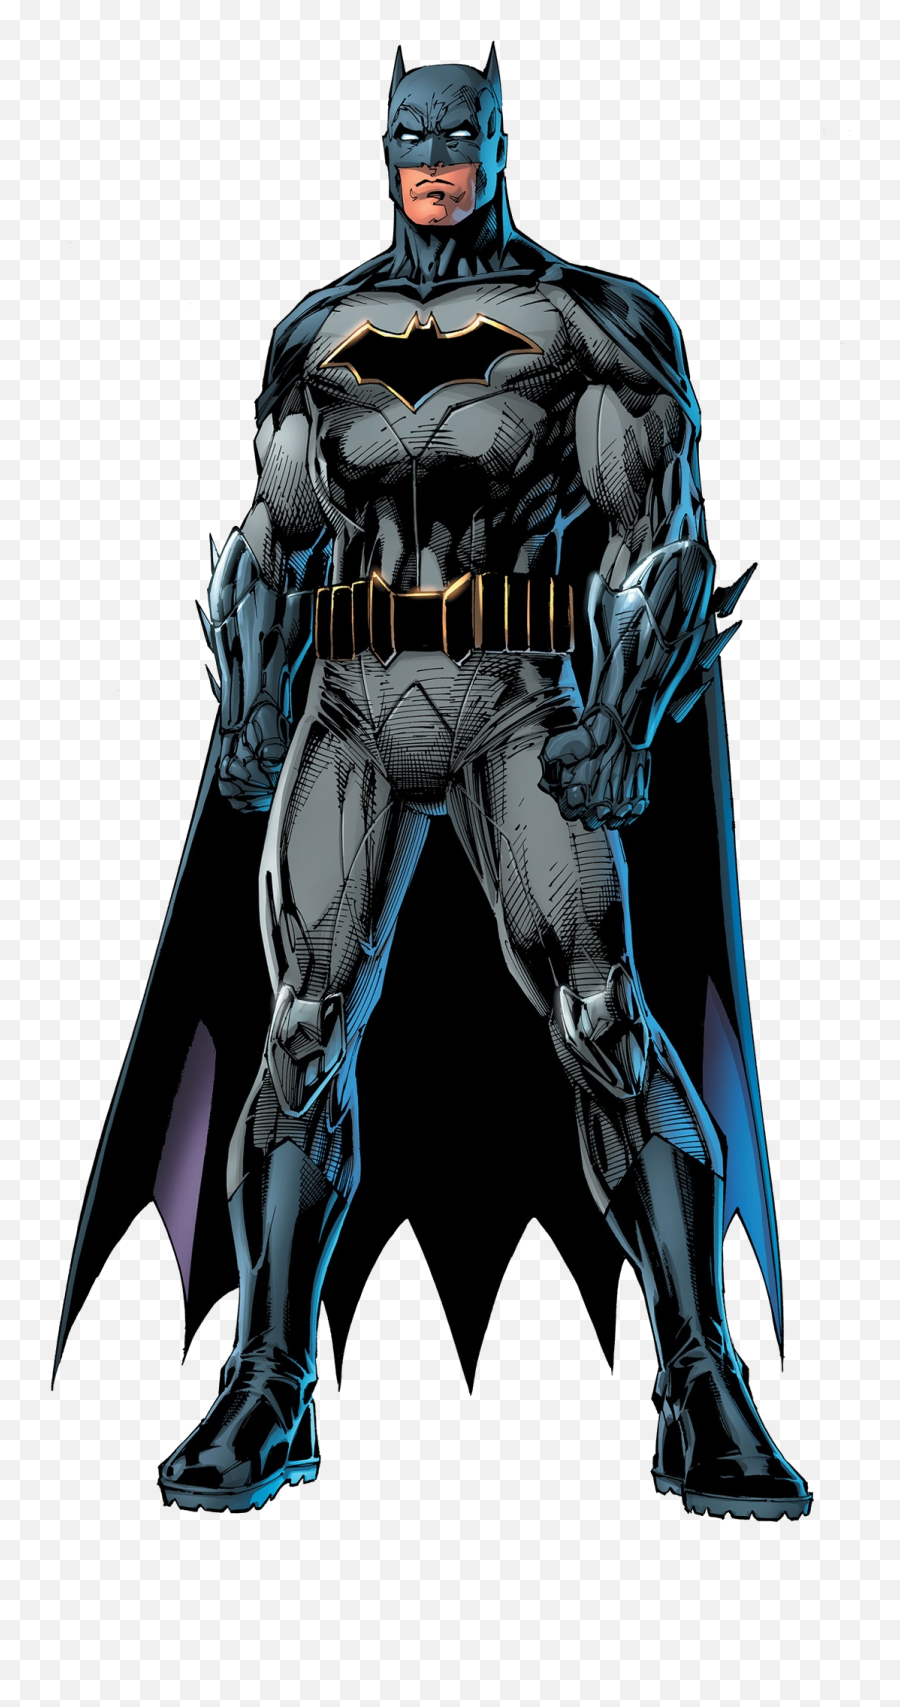 Batman Png Images - Batman Character,Batman Png